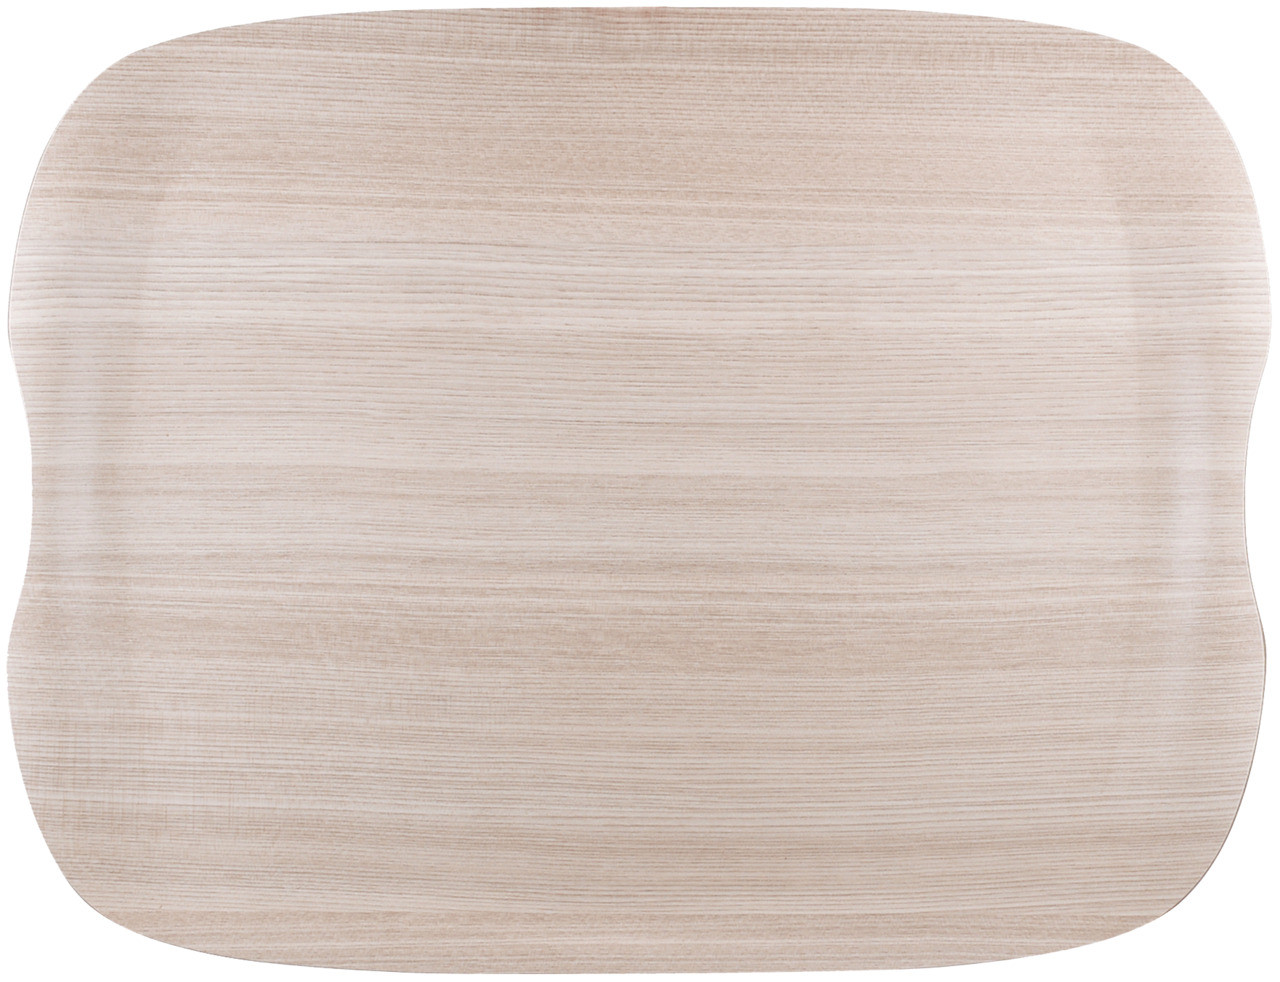 Tablett Wave 430 x 330 mm light Wood